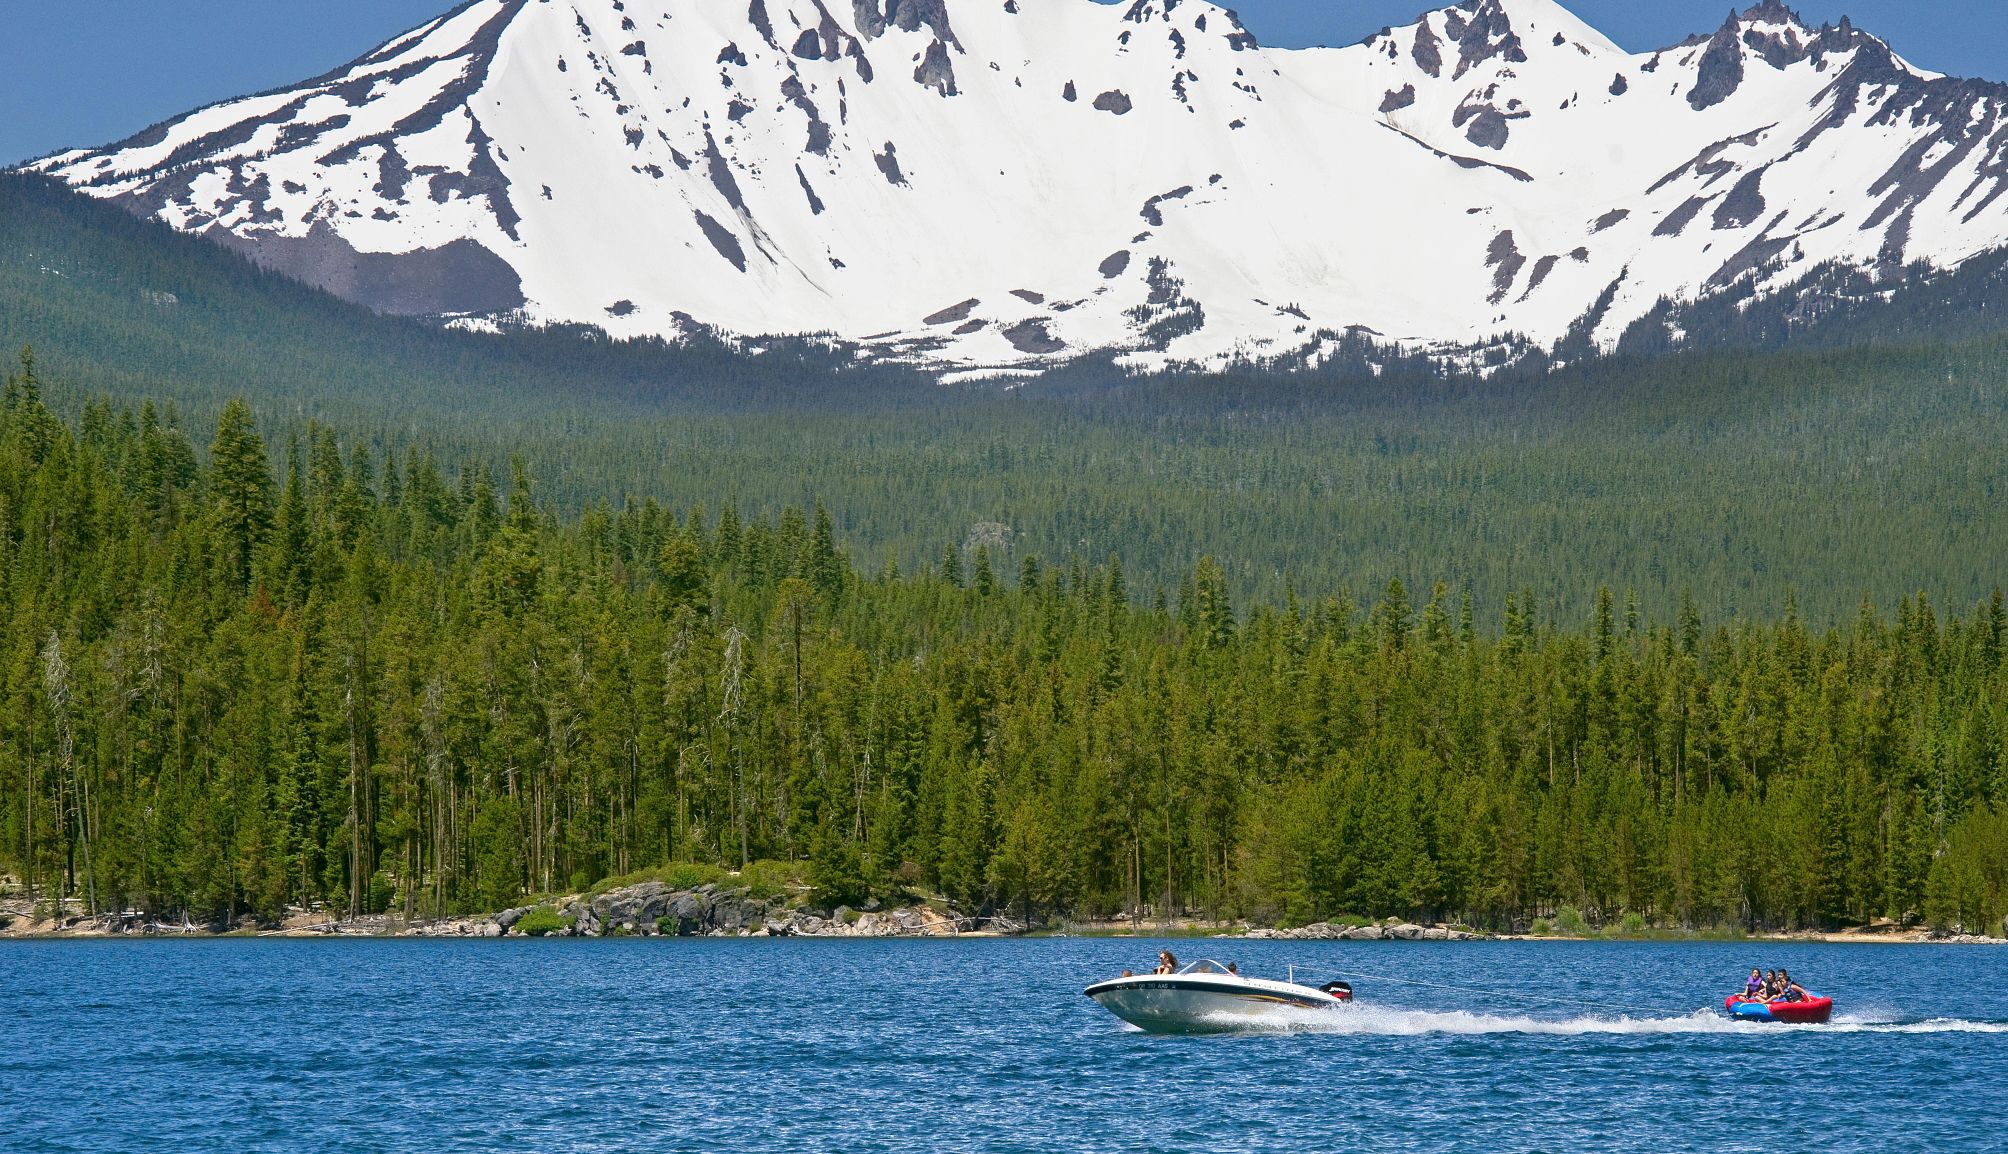 Los campistas pueden alquilar un barco para navegar por el lago Crescent.